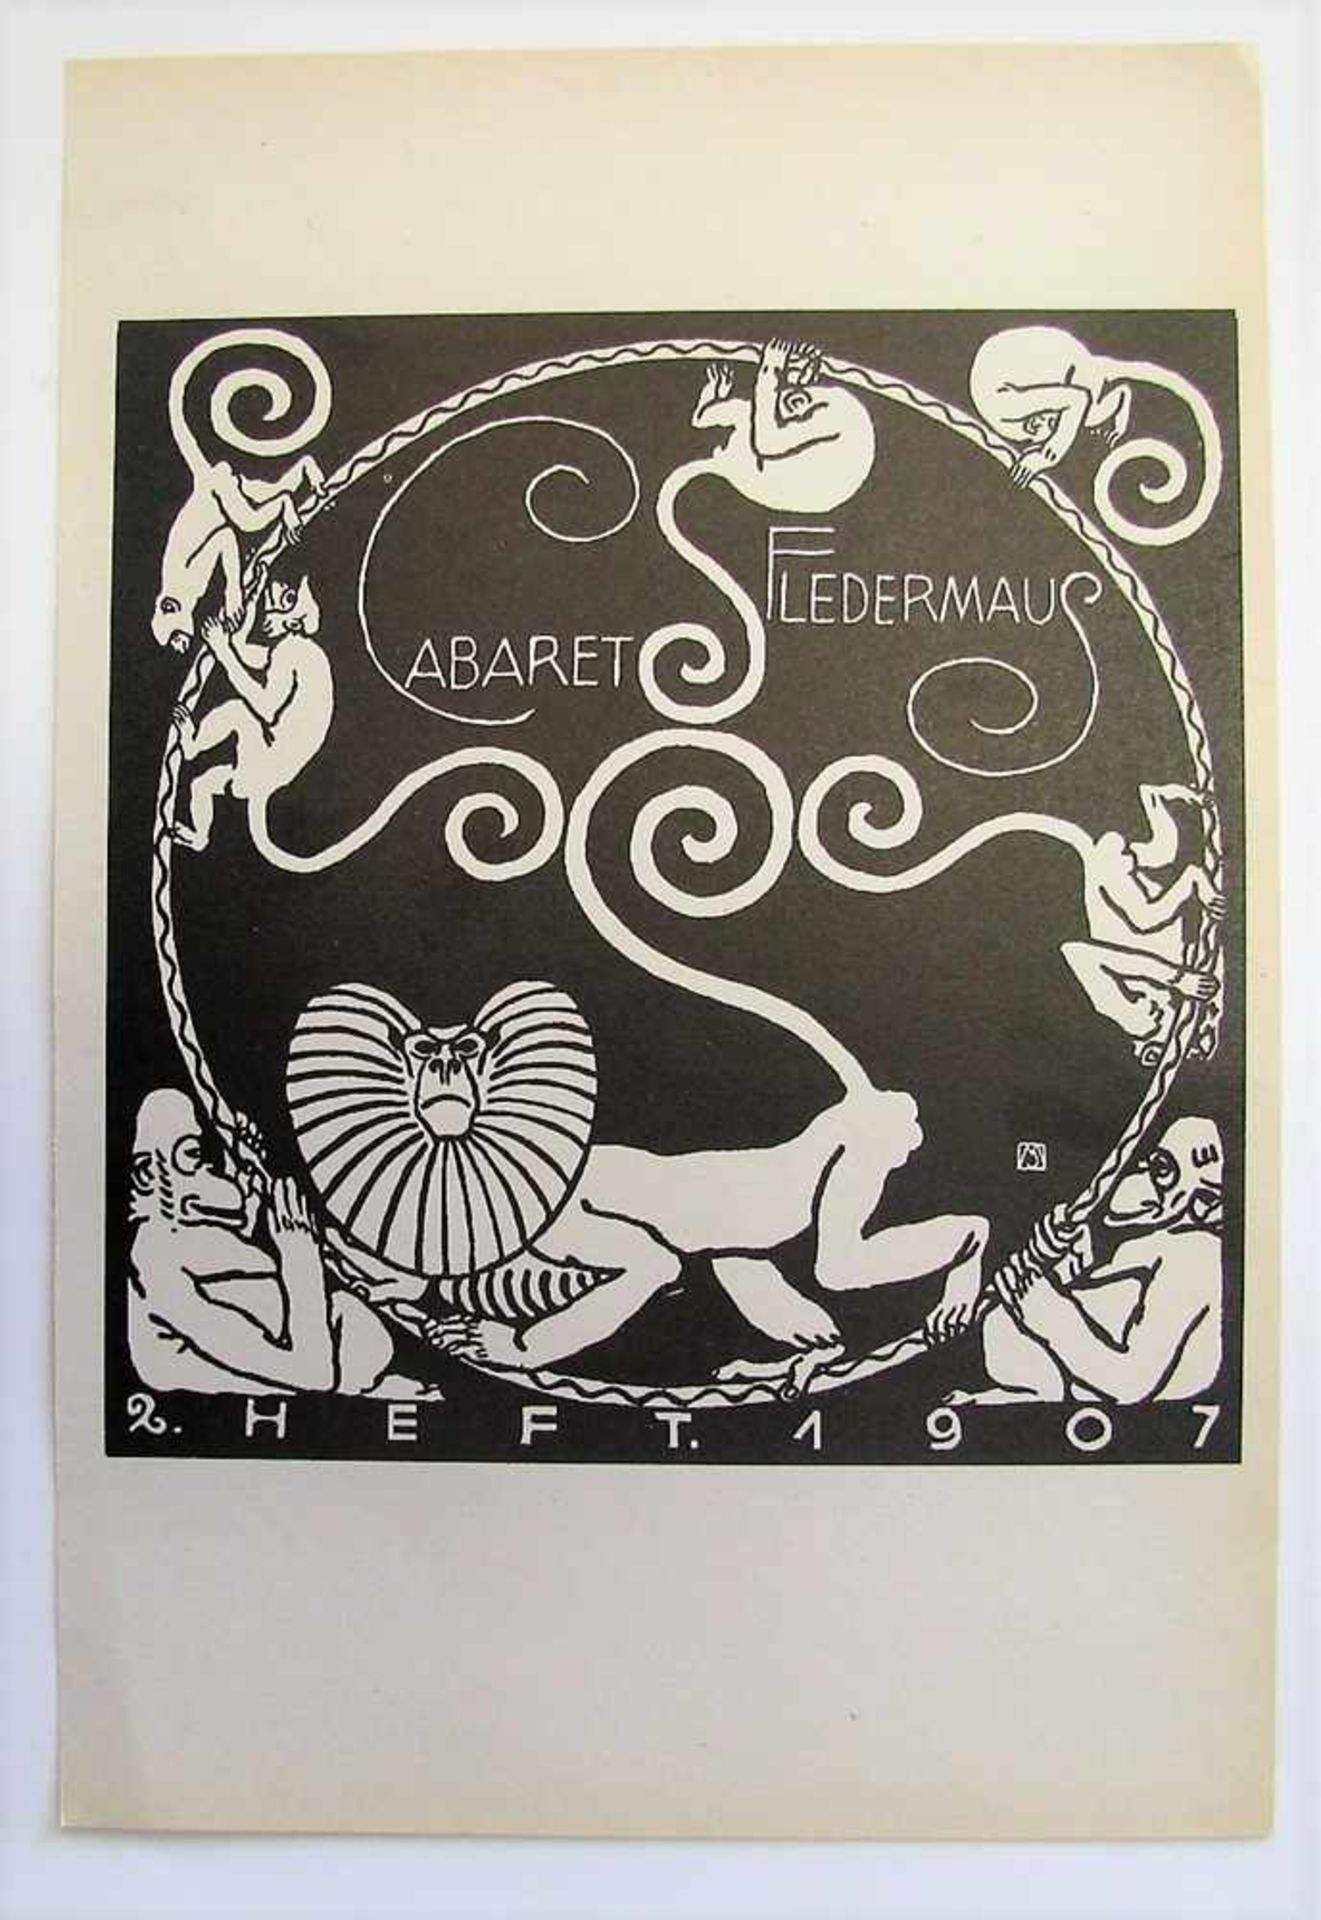 Probedruck zum Titelblatt des 2. Programmhefts des Cabarets Fledermaus, Wiener Werkstätte, 1907,